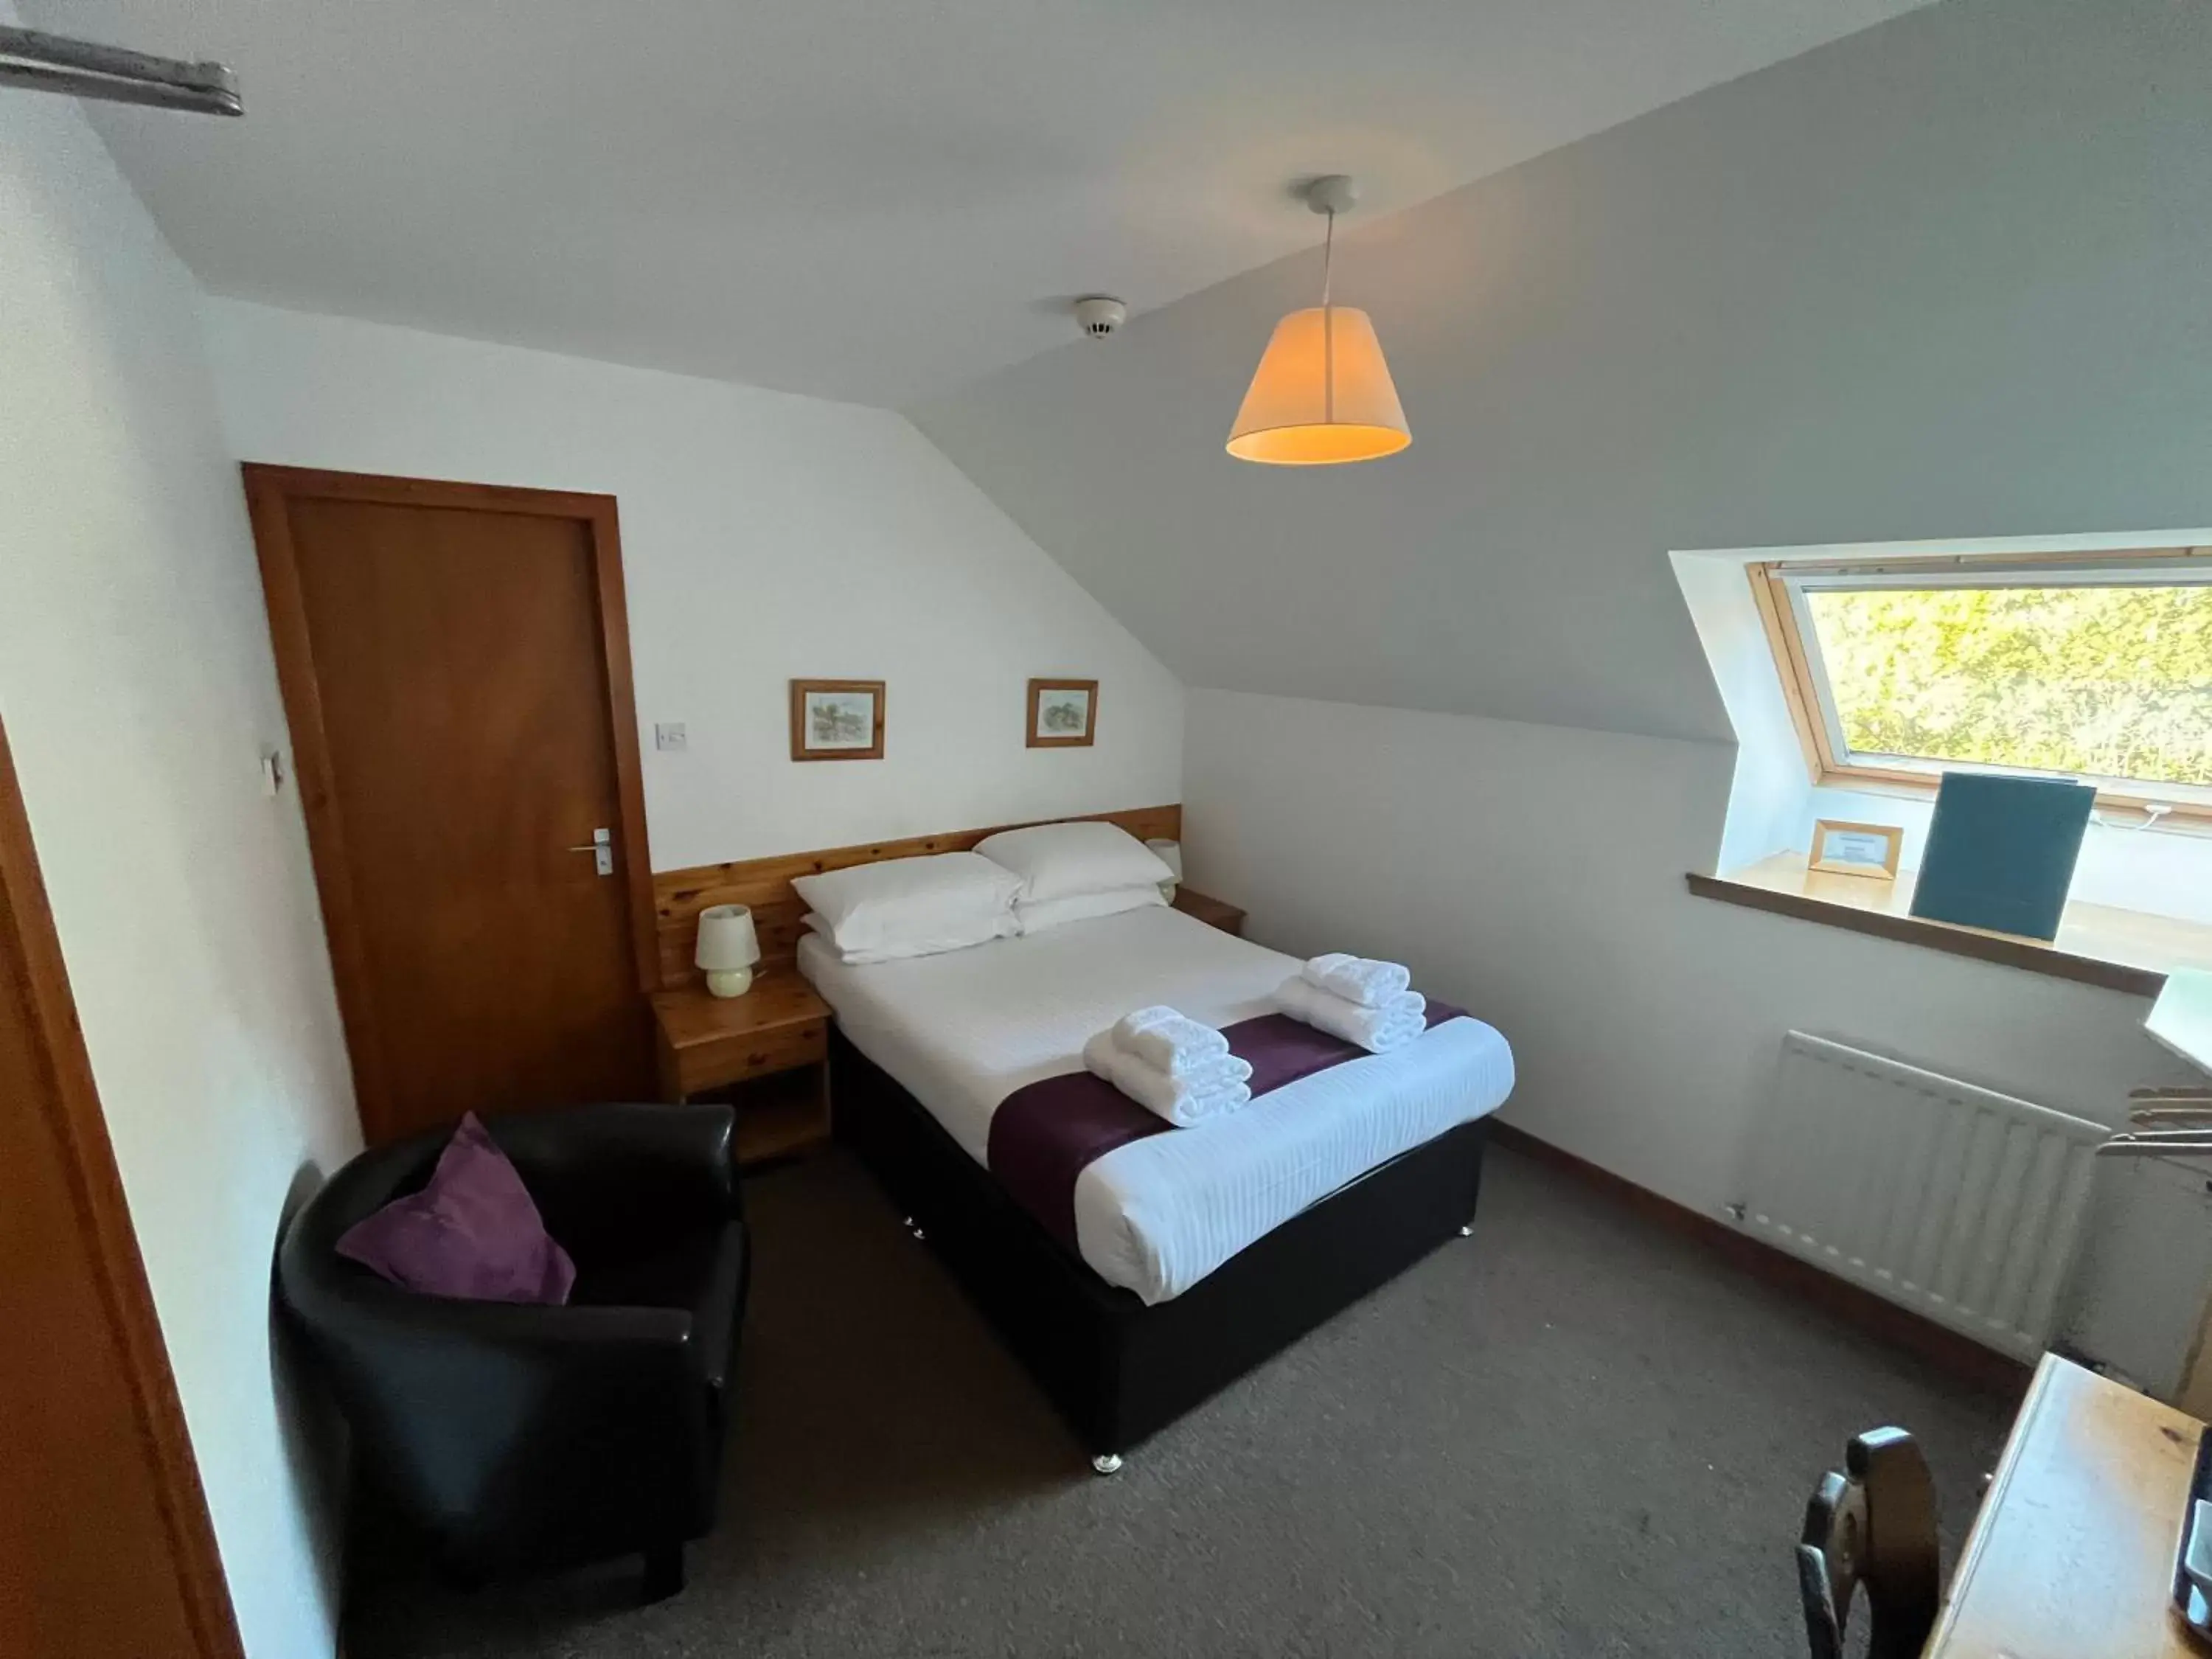 Bedroom in Smithton Hotel